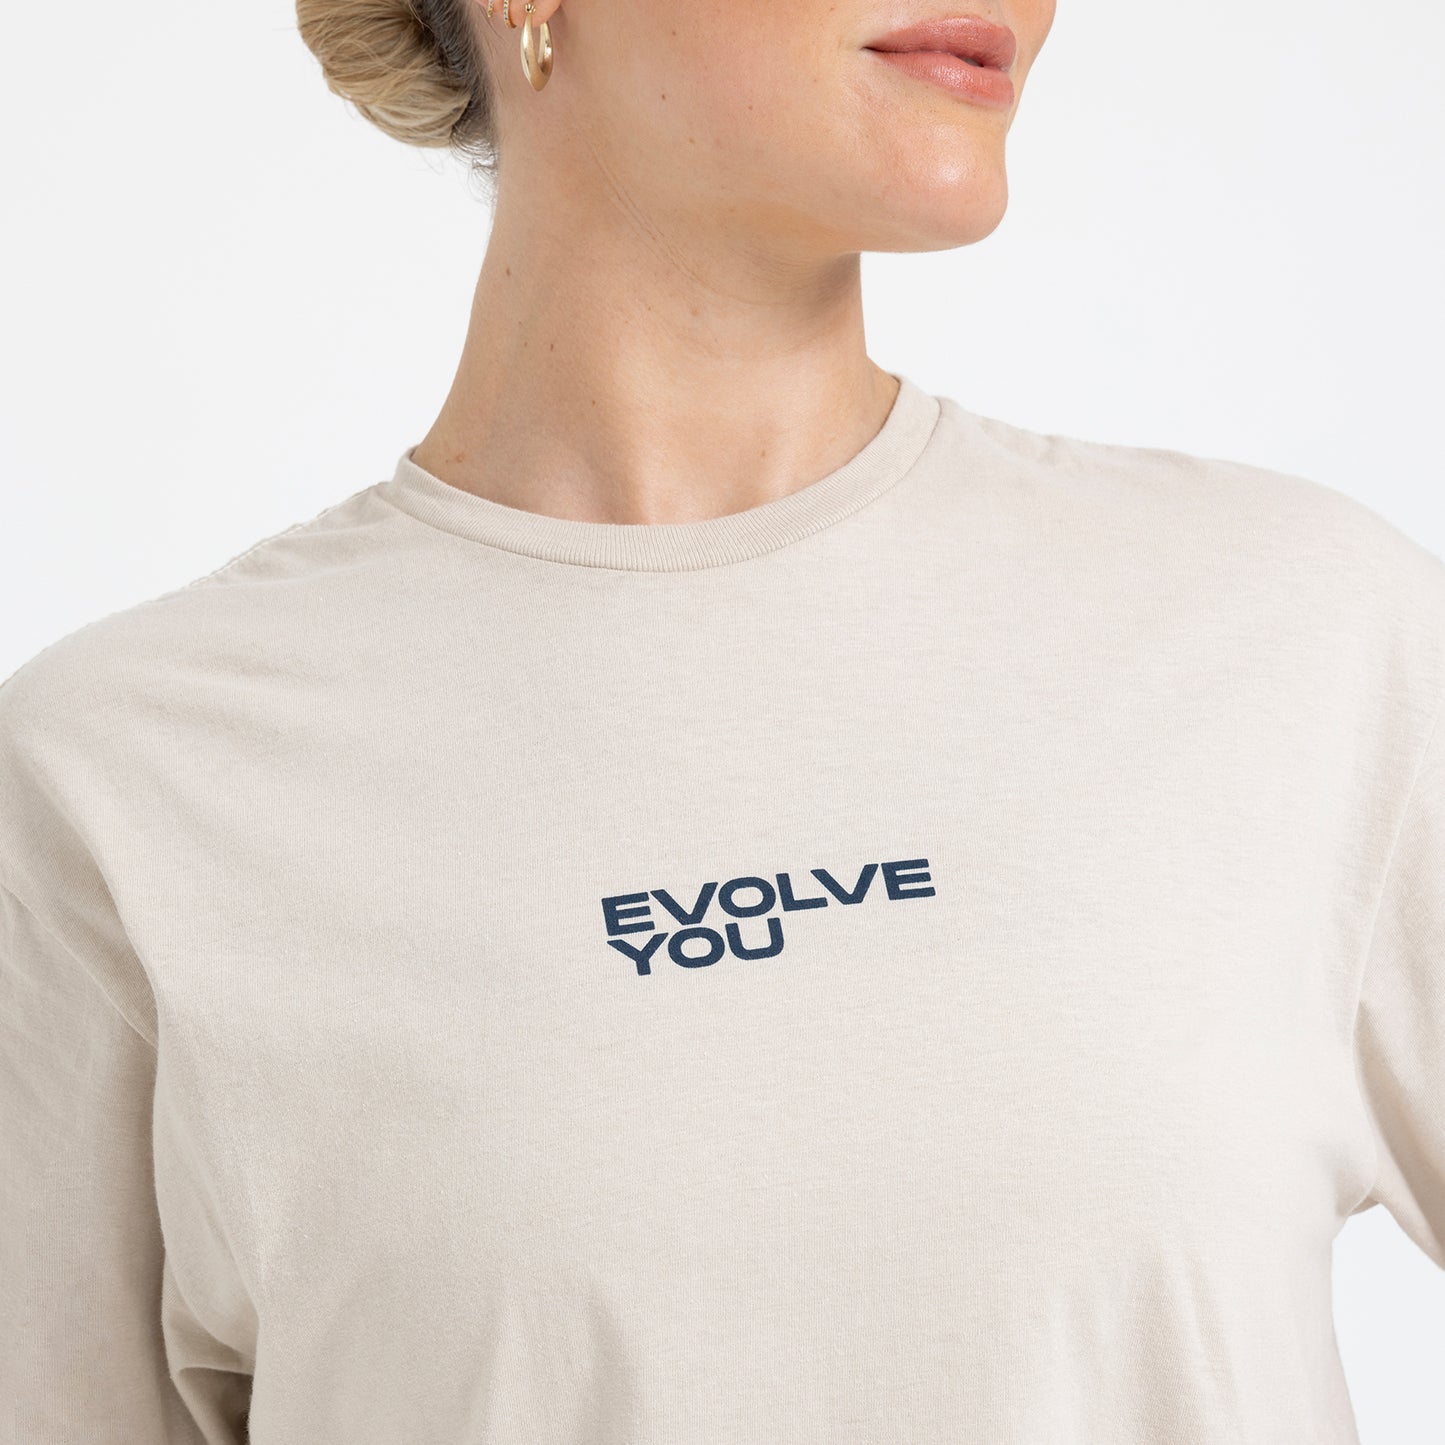 Original EvolveYou T-Shirt